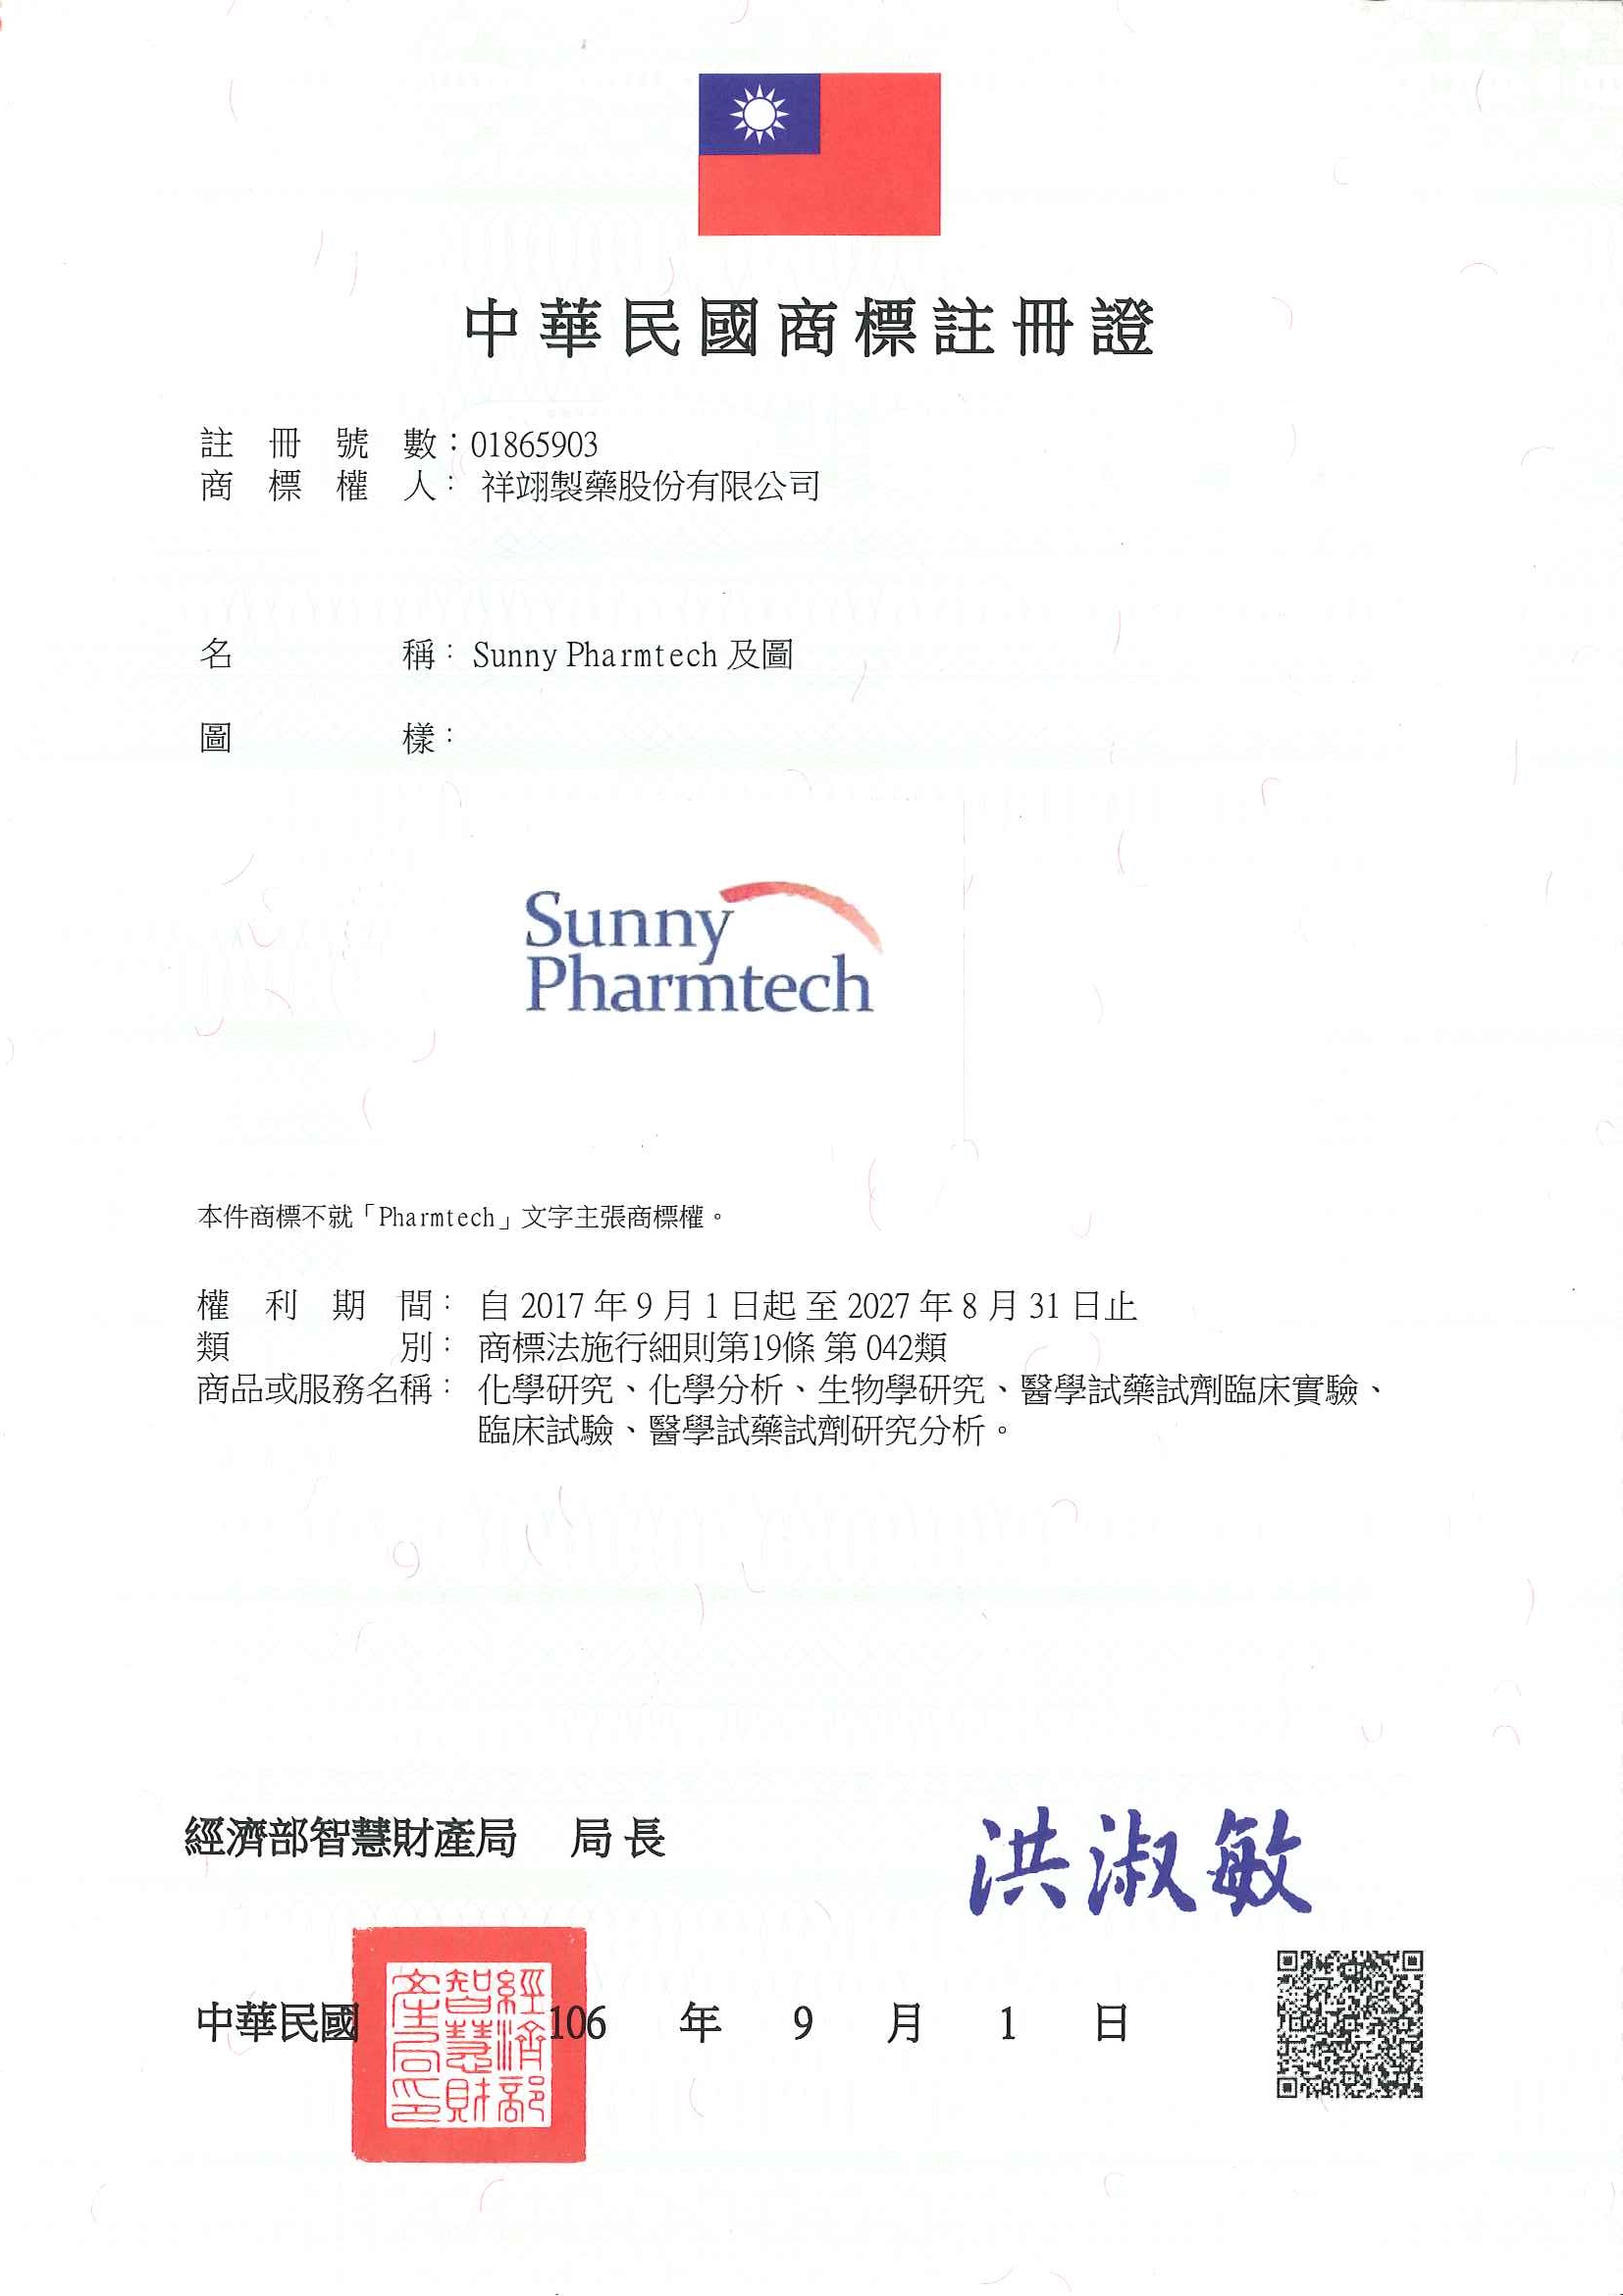 此為祥翊製藥Sunny Pharmtech及圖中華民國商標註冊證